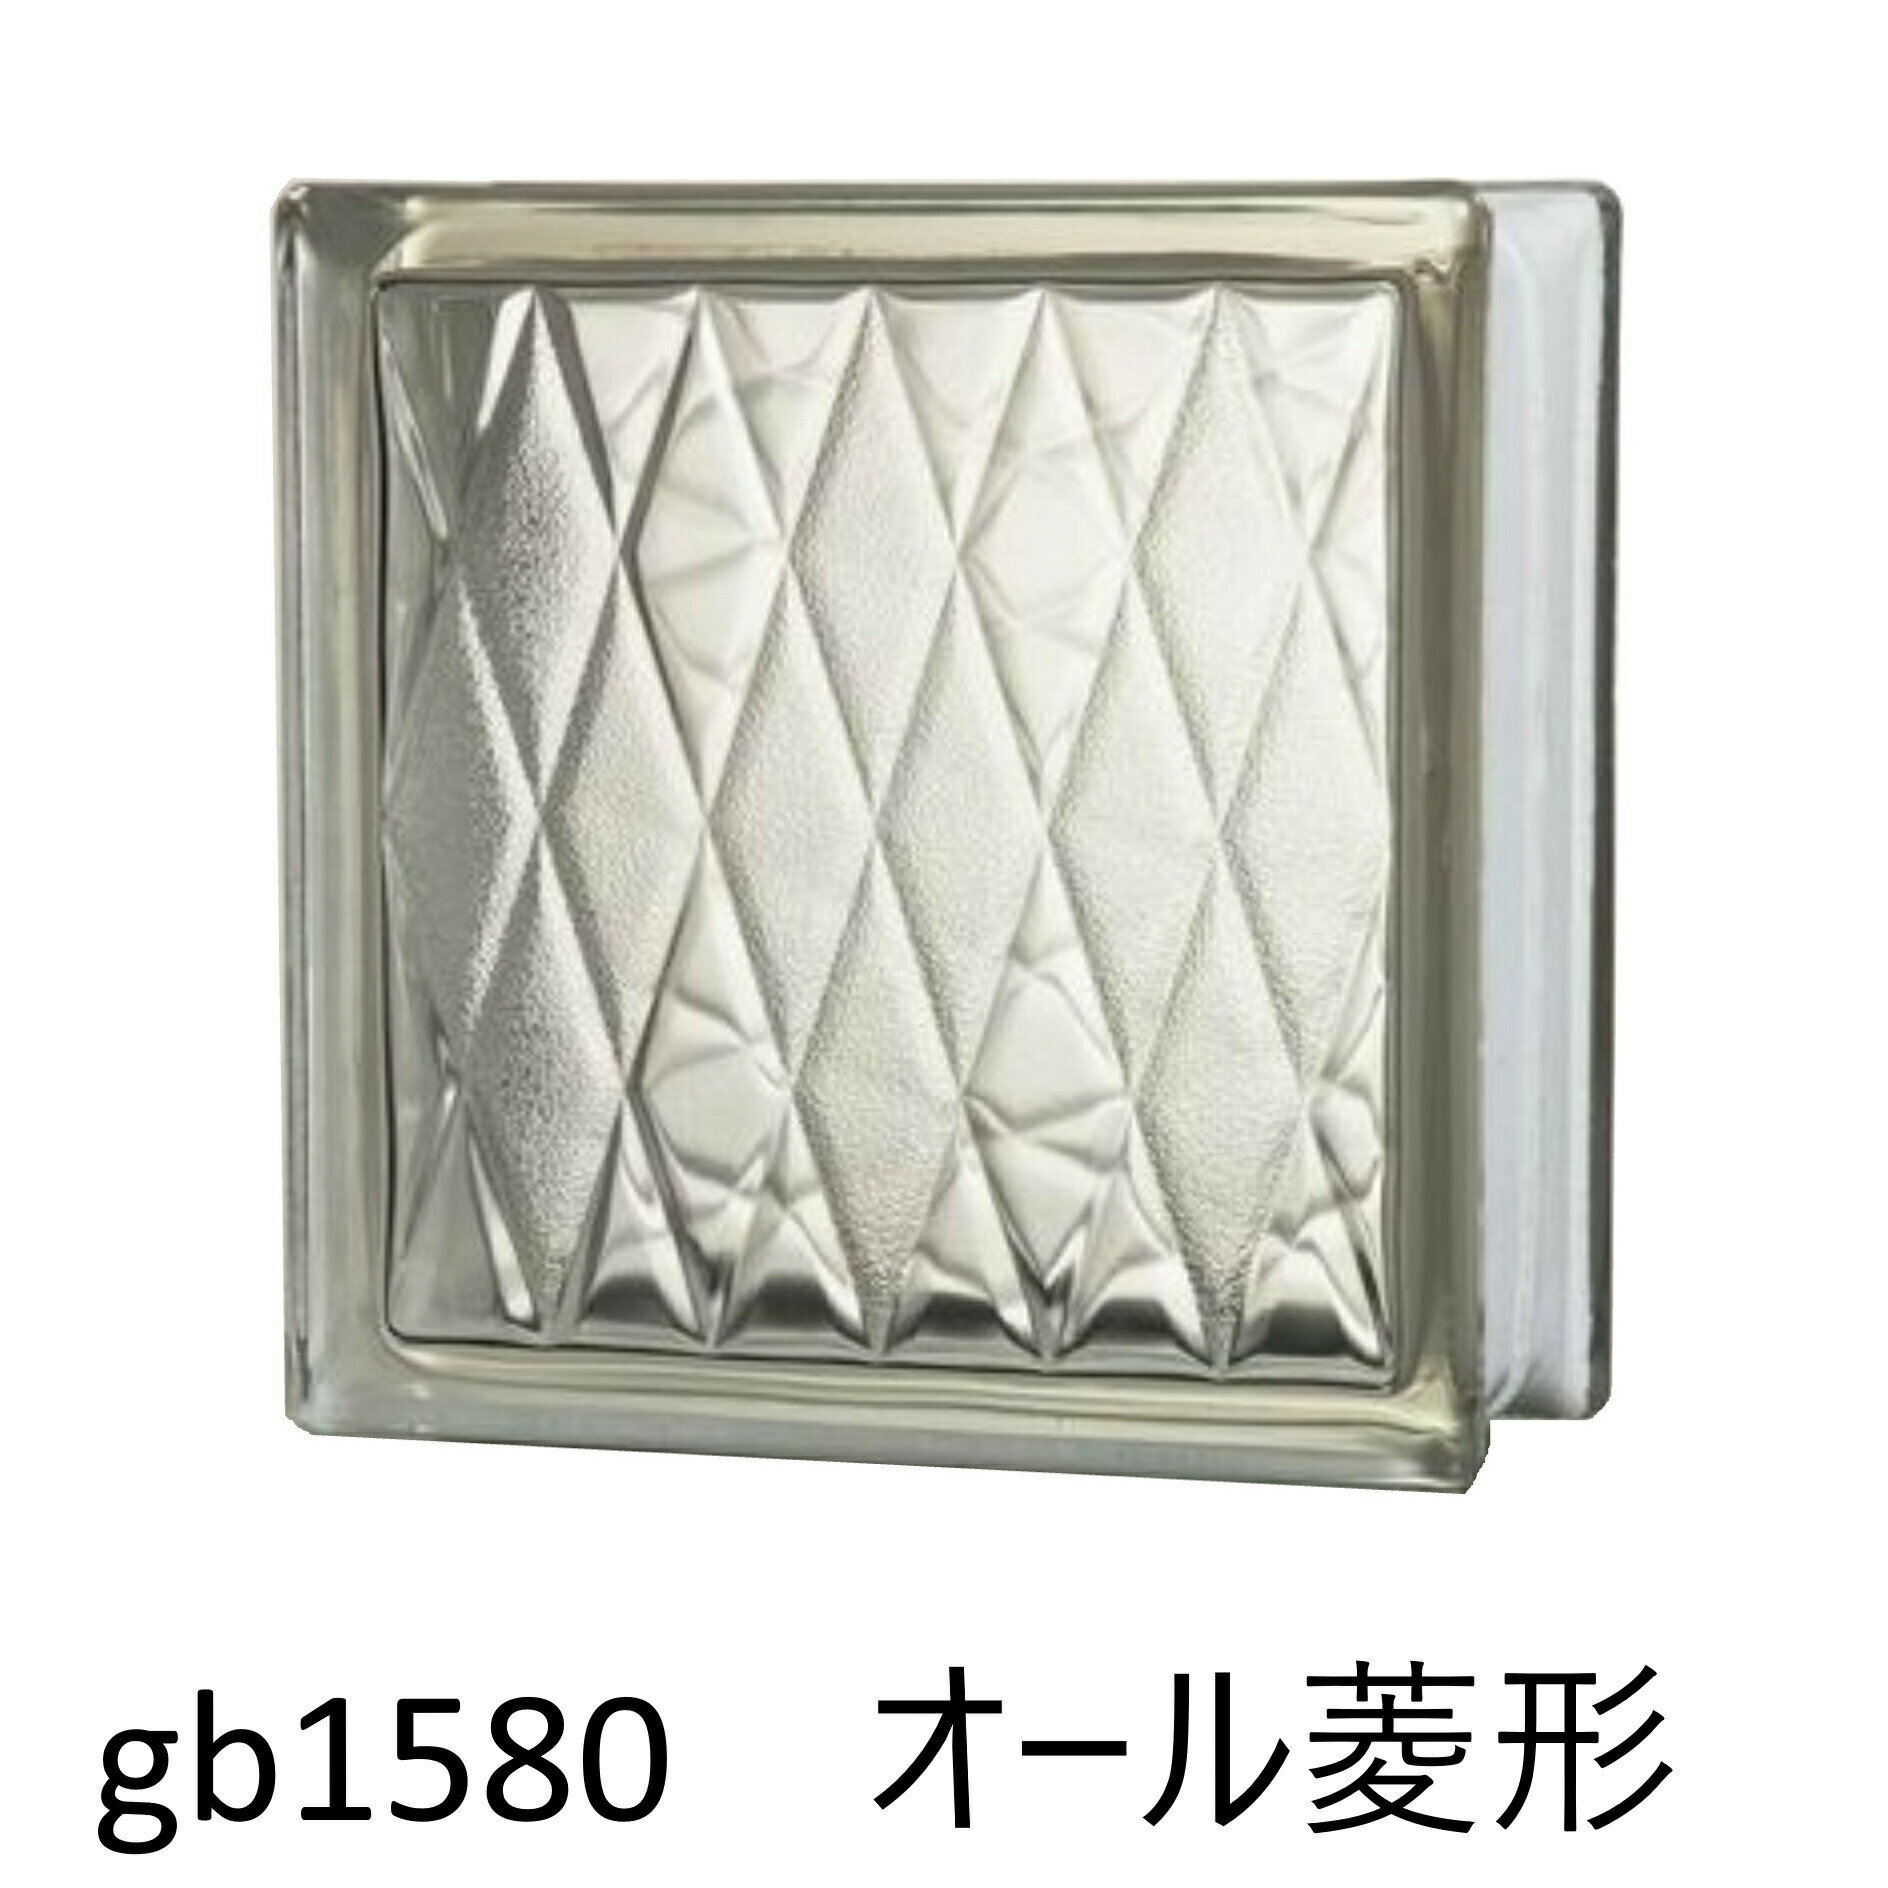 ガラスブロック 世界で有名なブランド品 厚み80mmクリア色オール菱形 gb1580